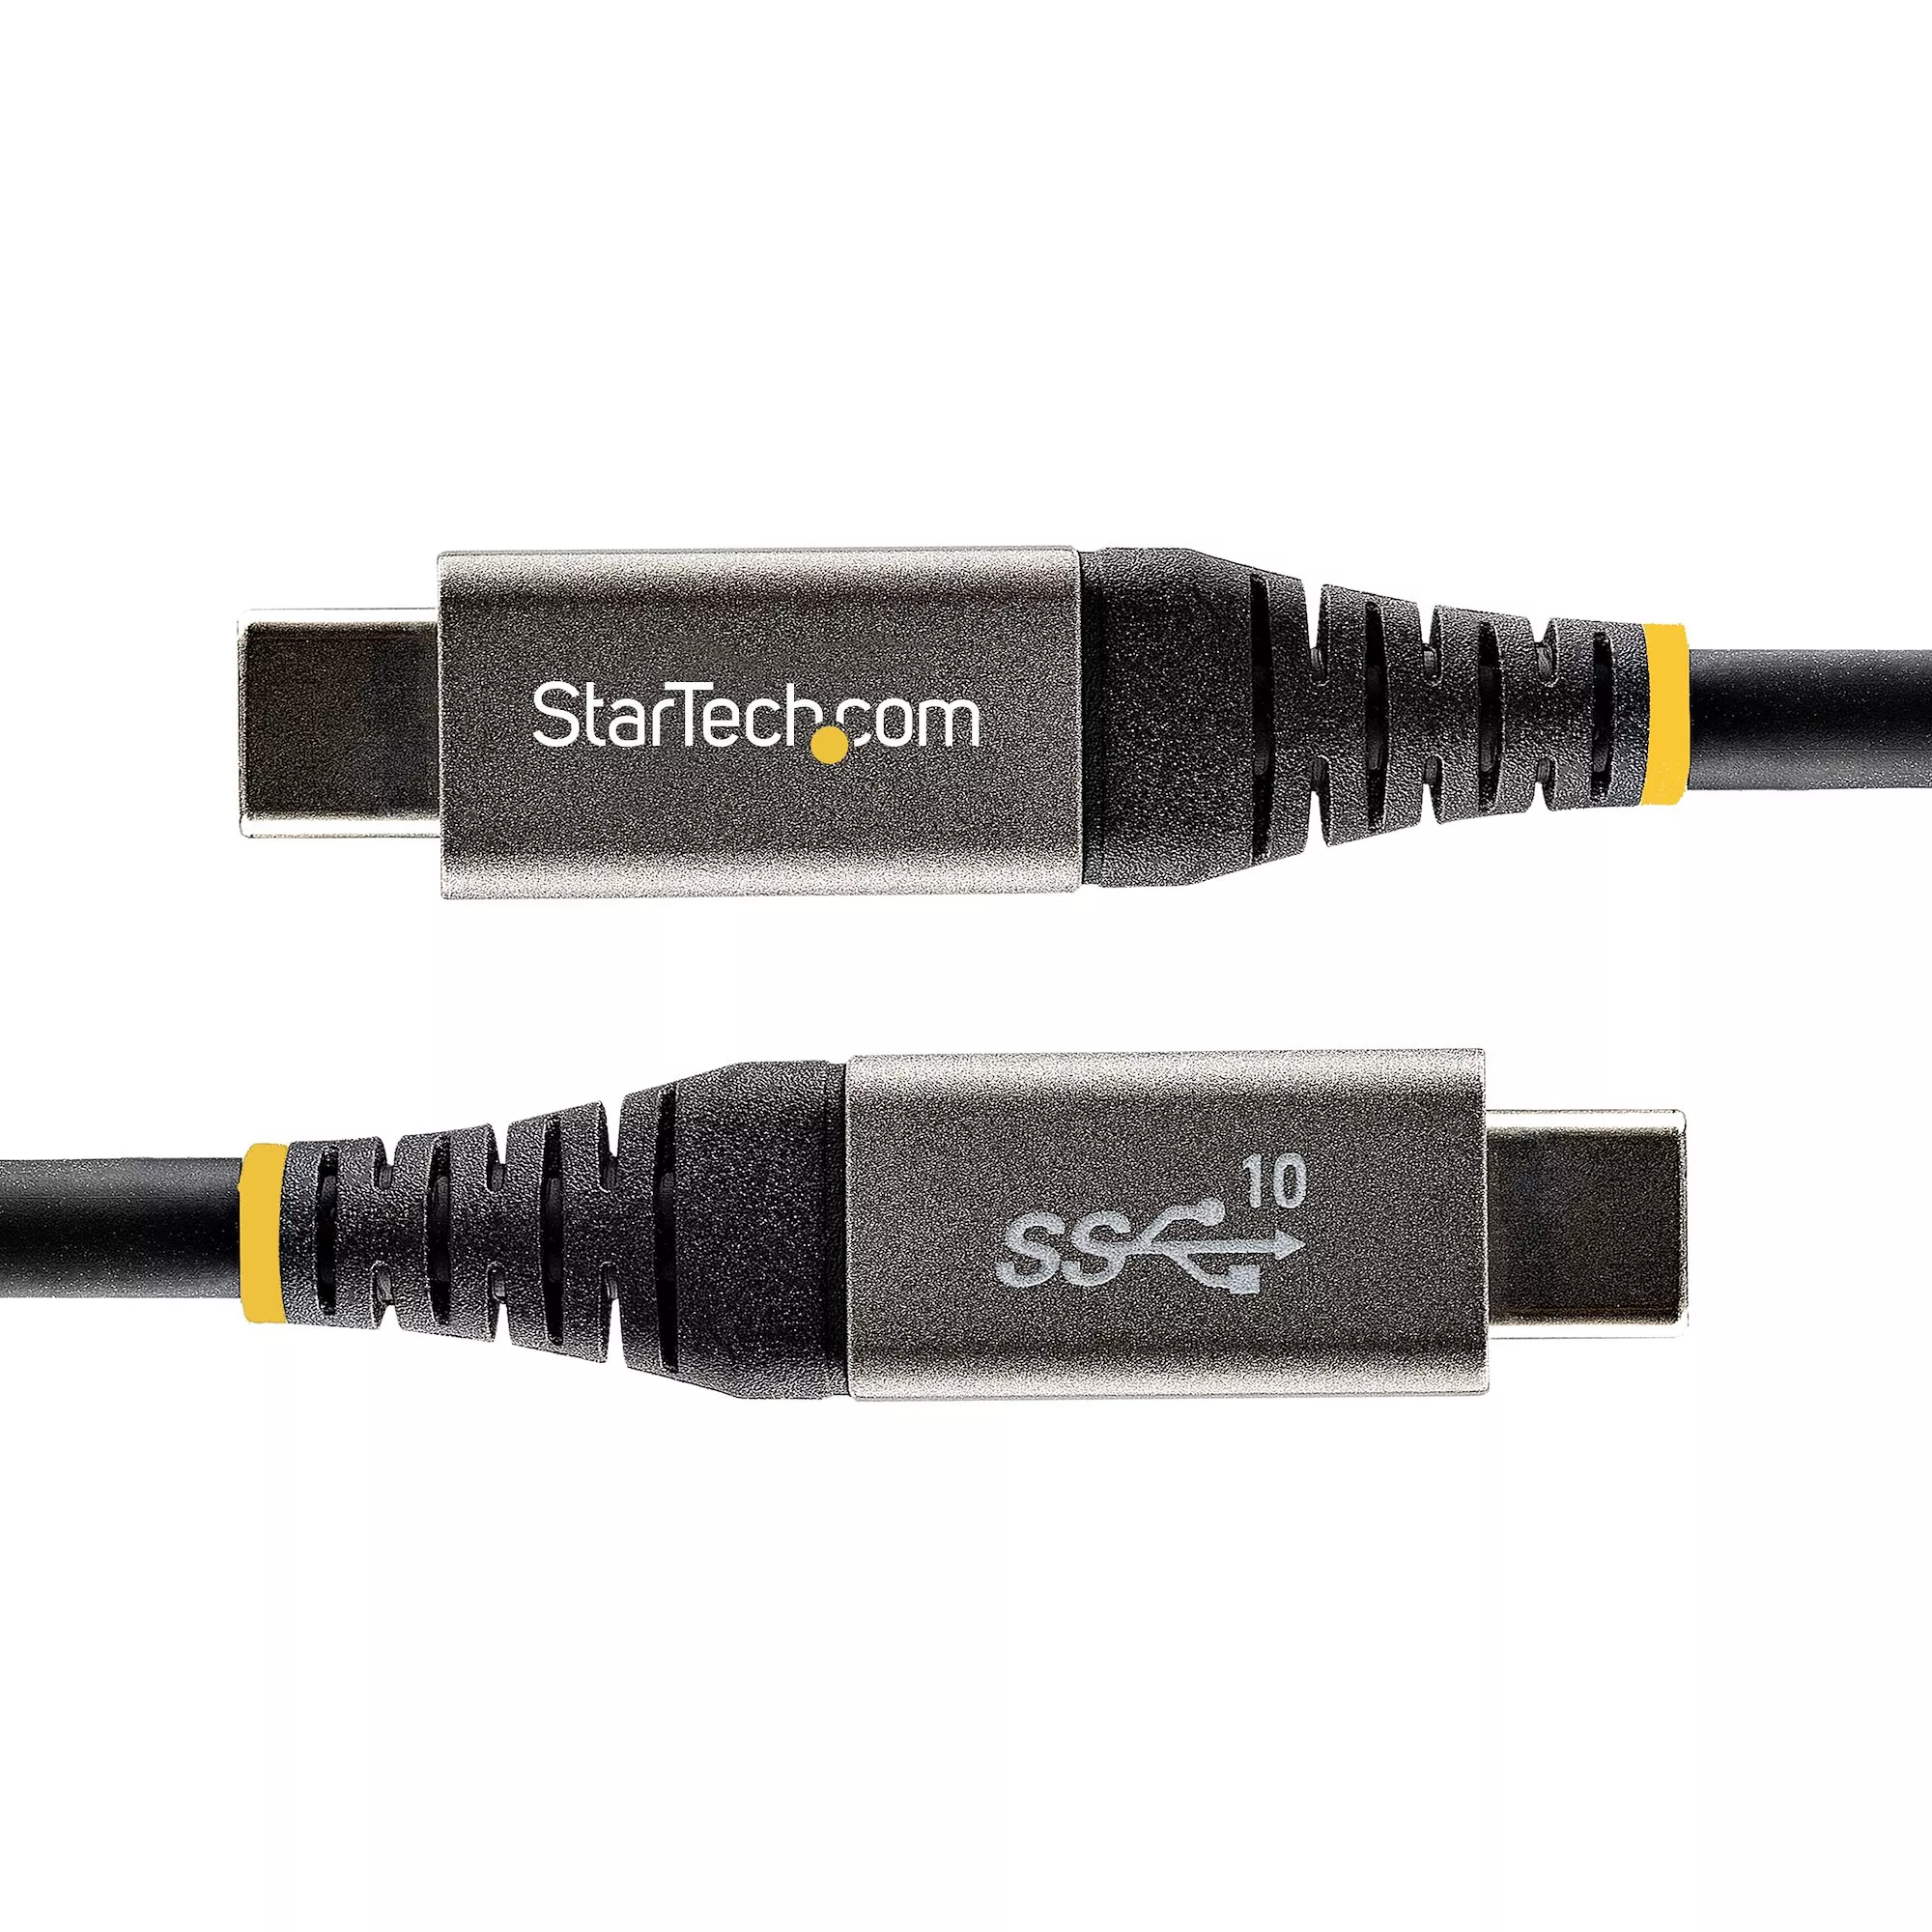 Achat StarTech.com Câble USB C 10Gbps 50cm - Certifié sur hello RSE - visuel 3